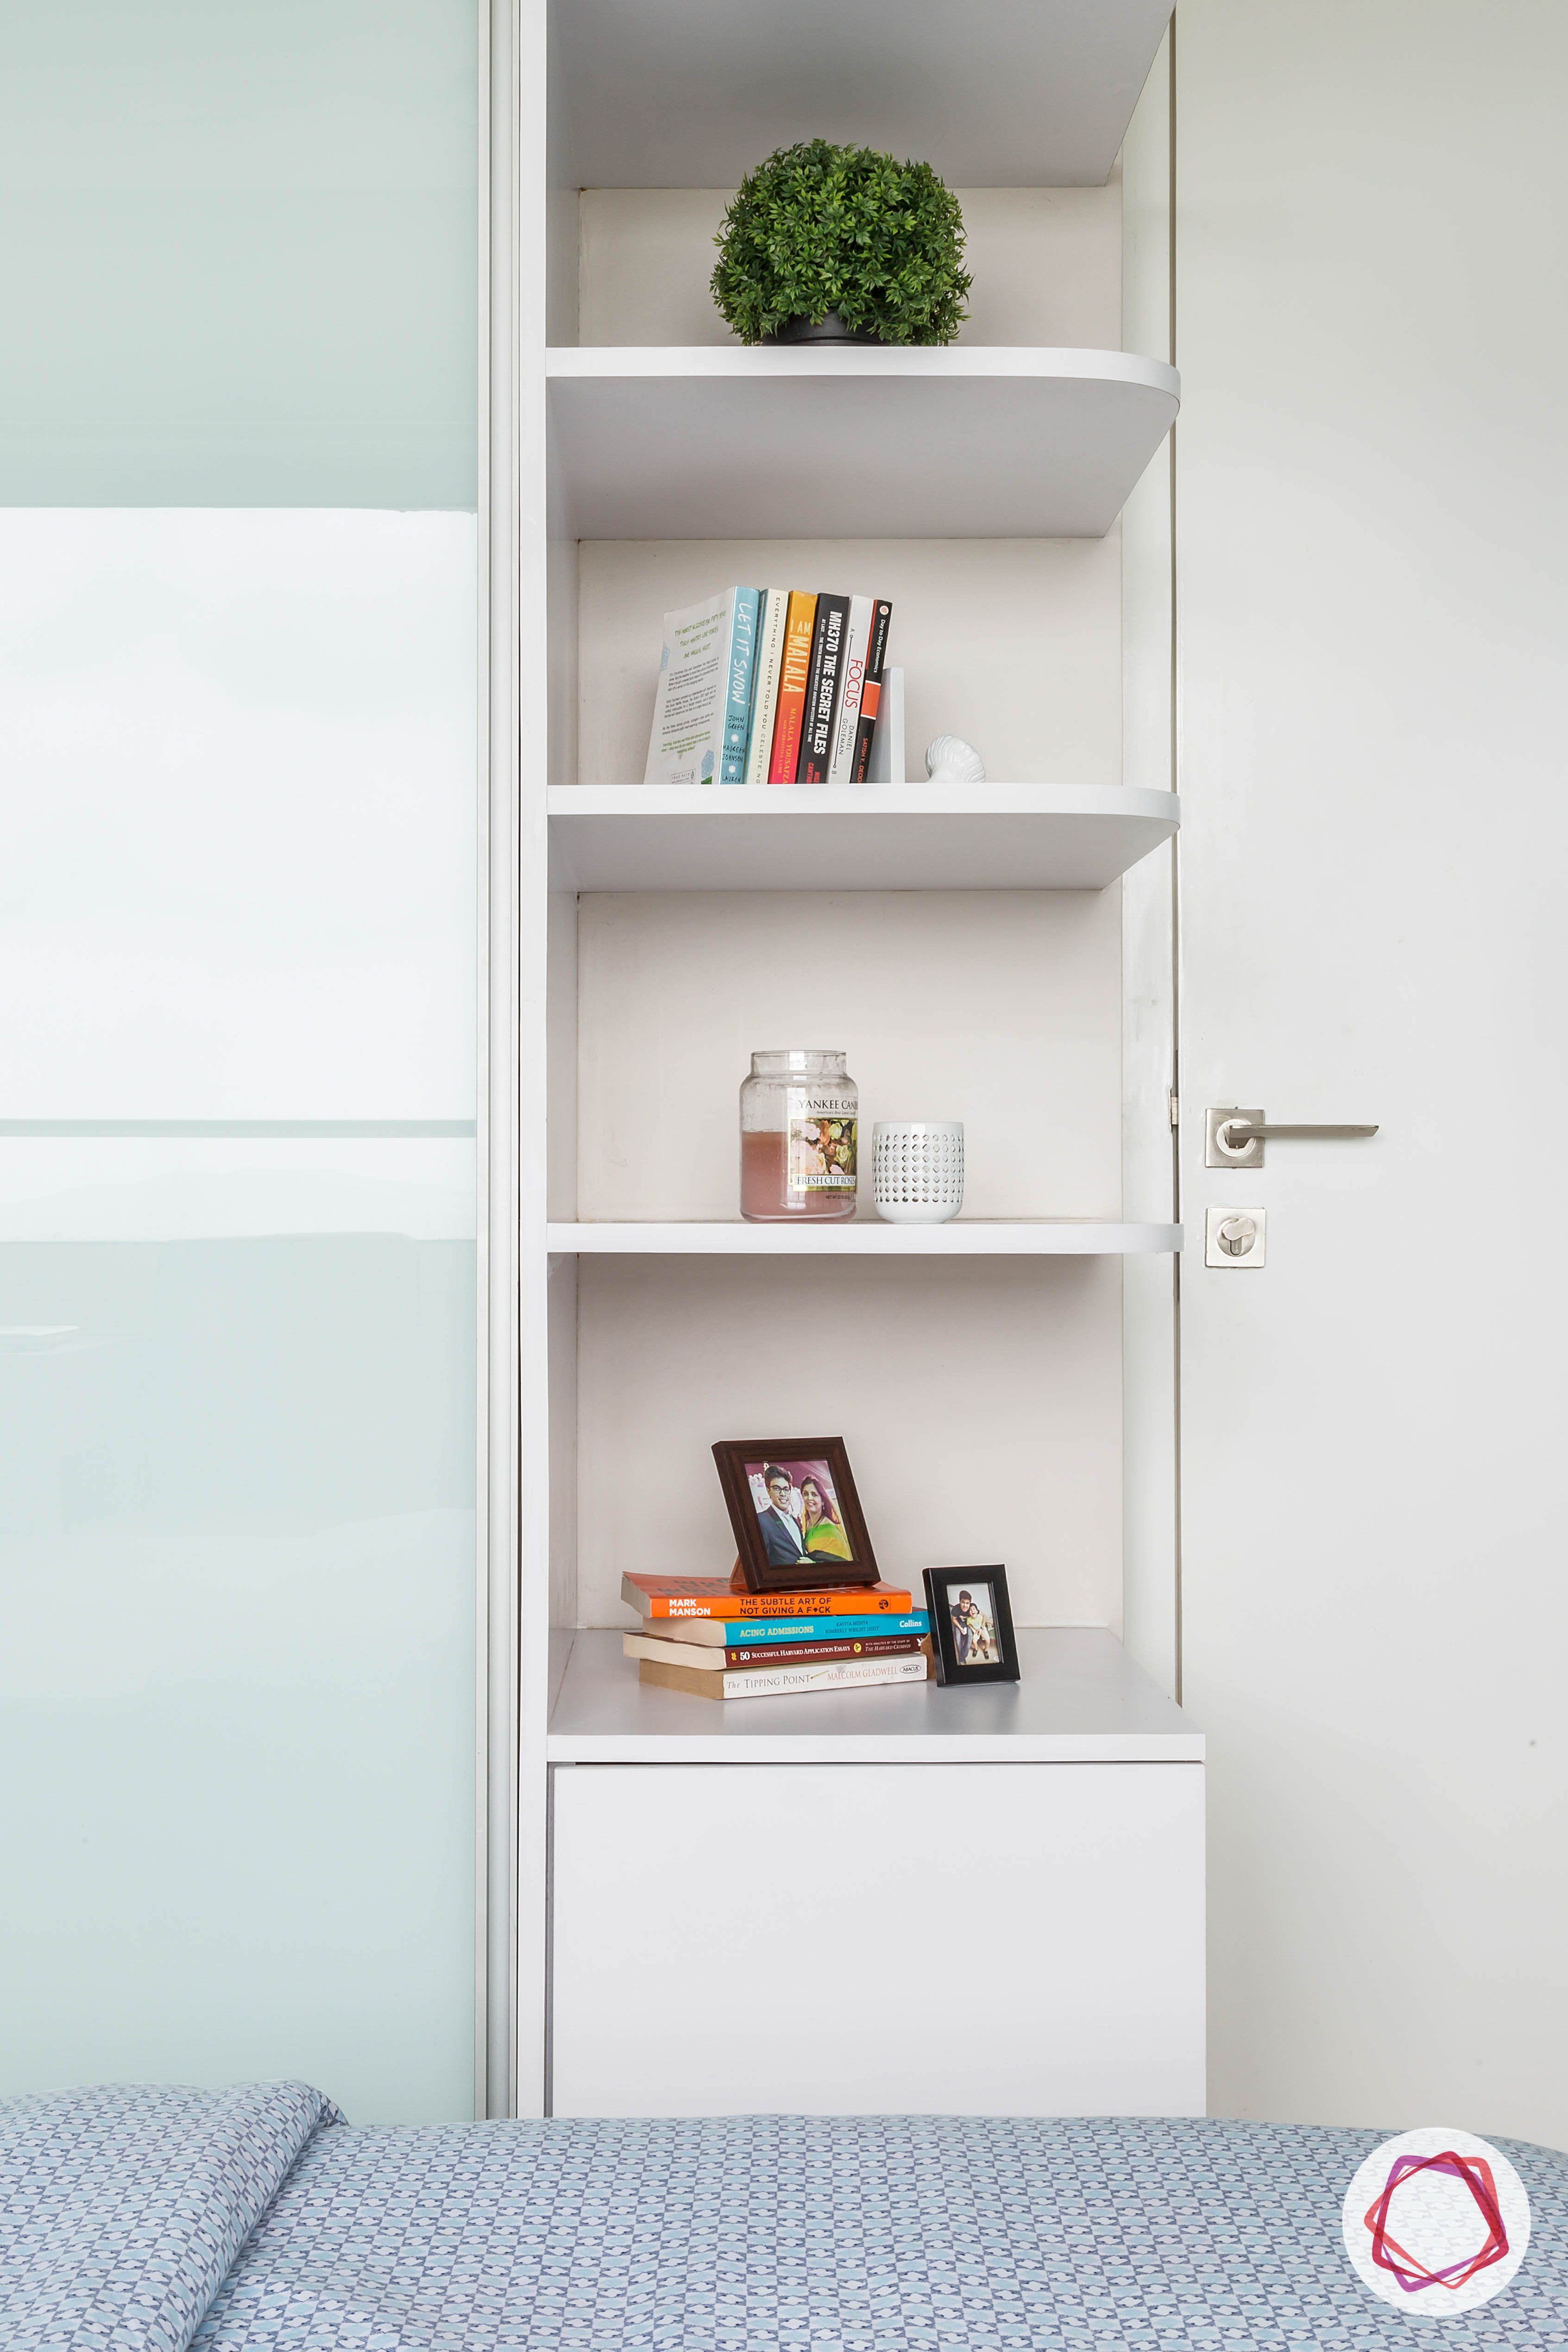 lodha group-simple bedroom designs-white shelves-shelves for bedroom